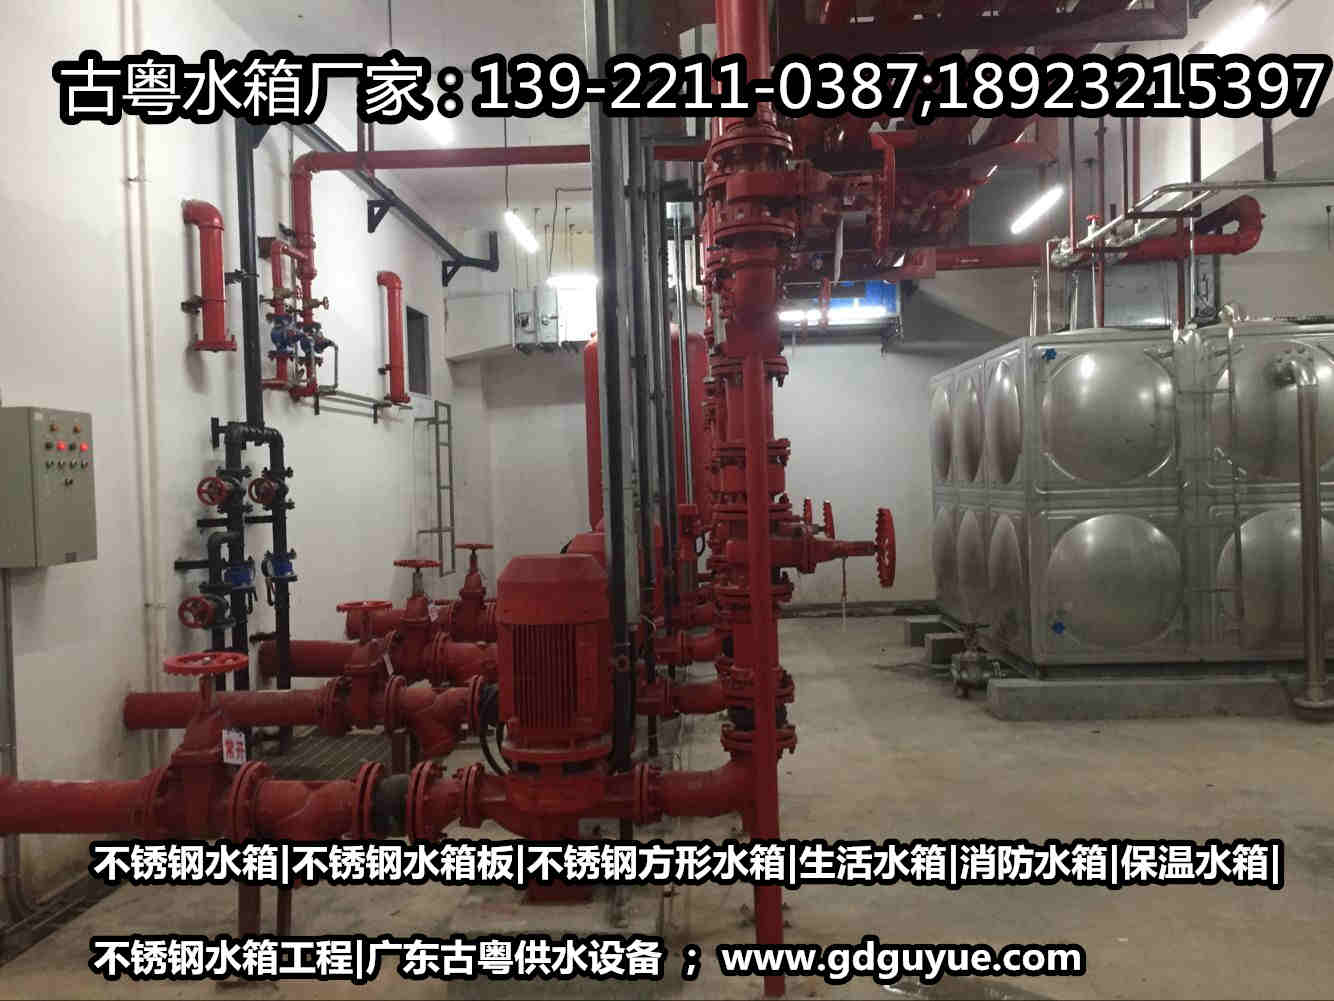 湛江不锈钢水箱厂家|不锈钢消防水箱|湛江不锈钢生活水箱|水箱工程